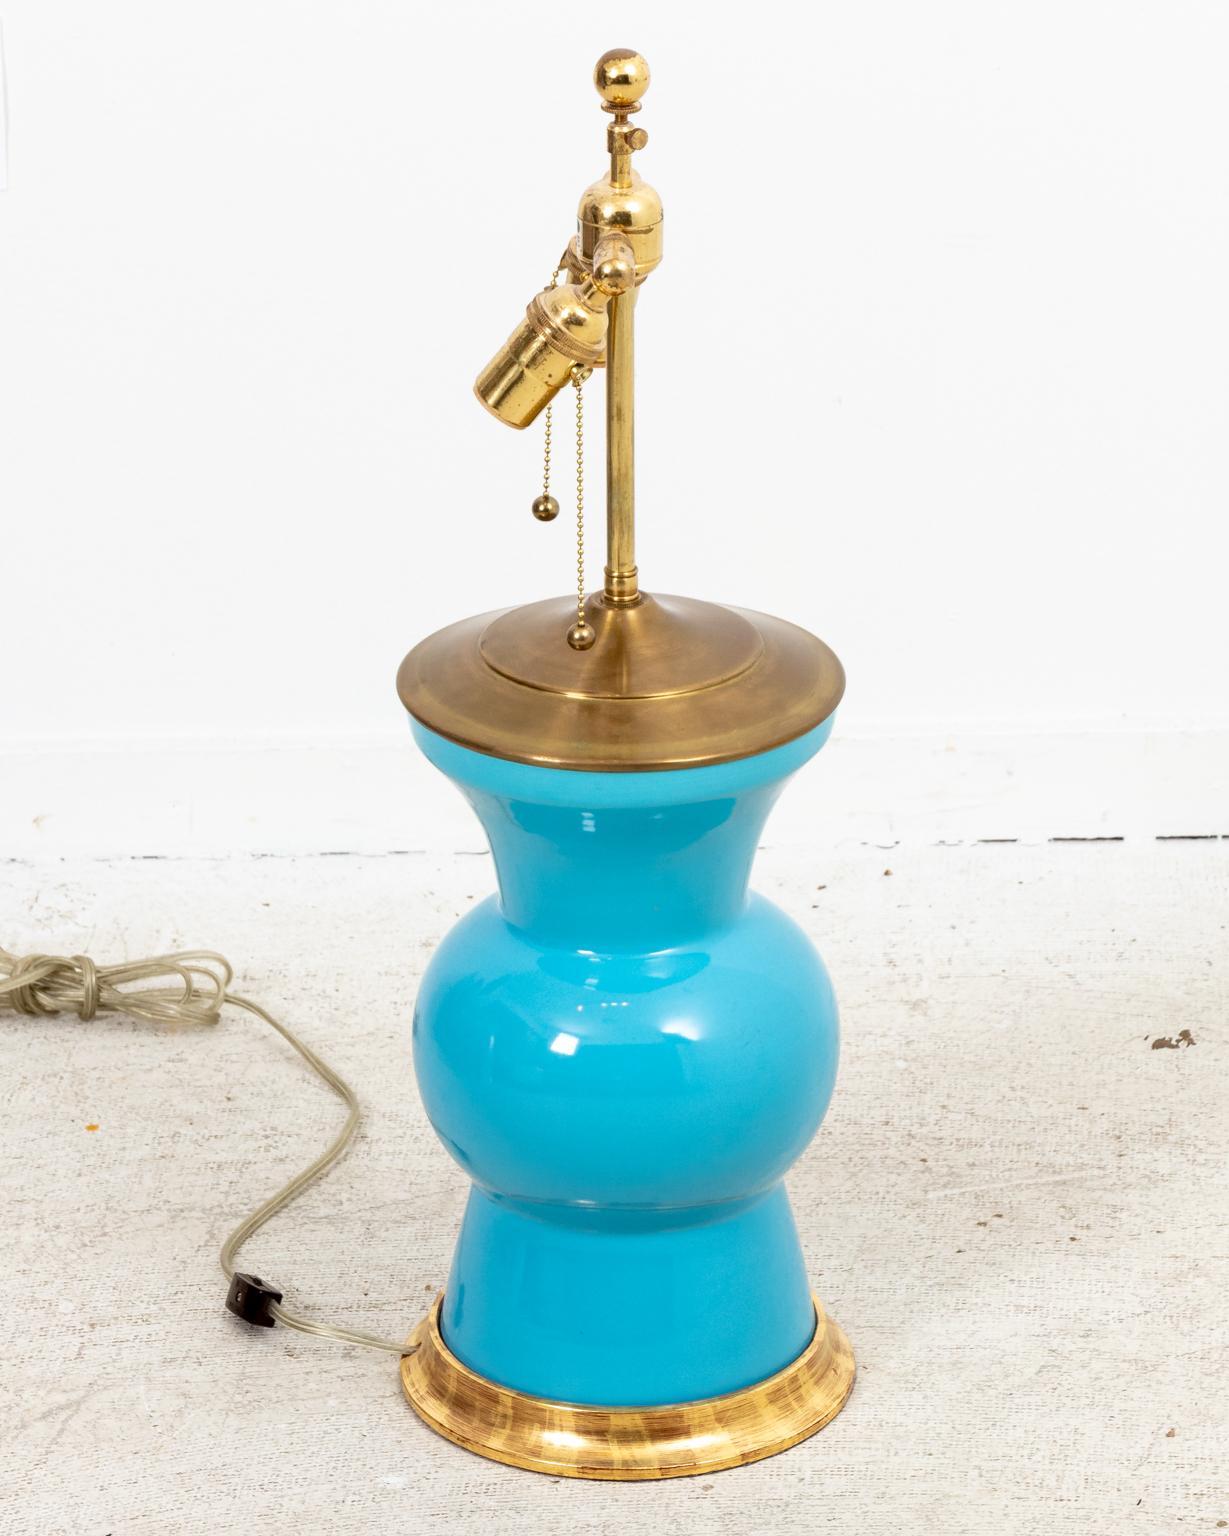 Paire de lampes de table Christopher Spitzmiller Gregory de style pot à gingembre en céramique et bois bleu poudre, datant des années 2000, avec une finition émaillée. Les abat-jour ne sont pas inclus. Fabriqué aux États-Unis. Veuillez noter l'usure